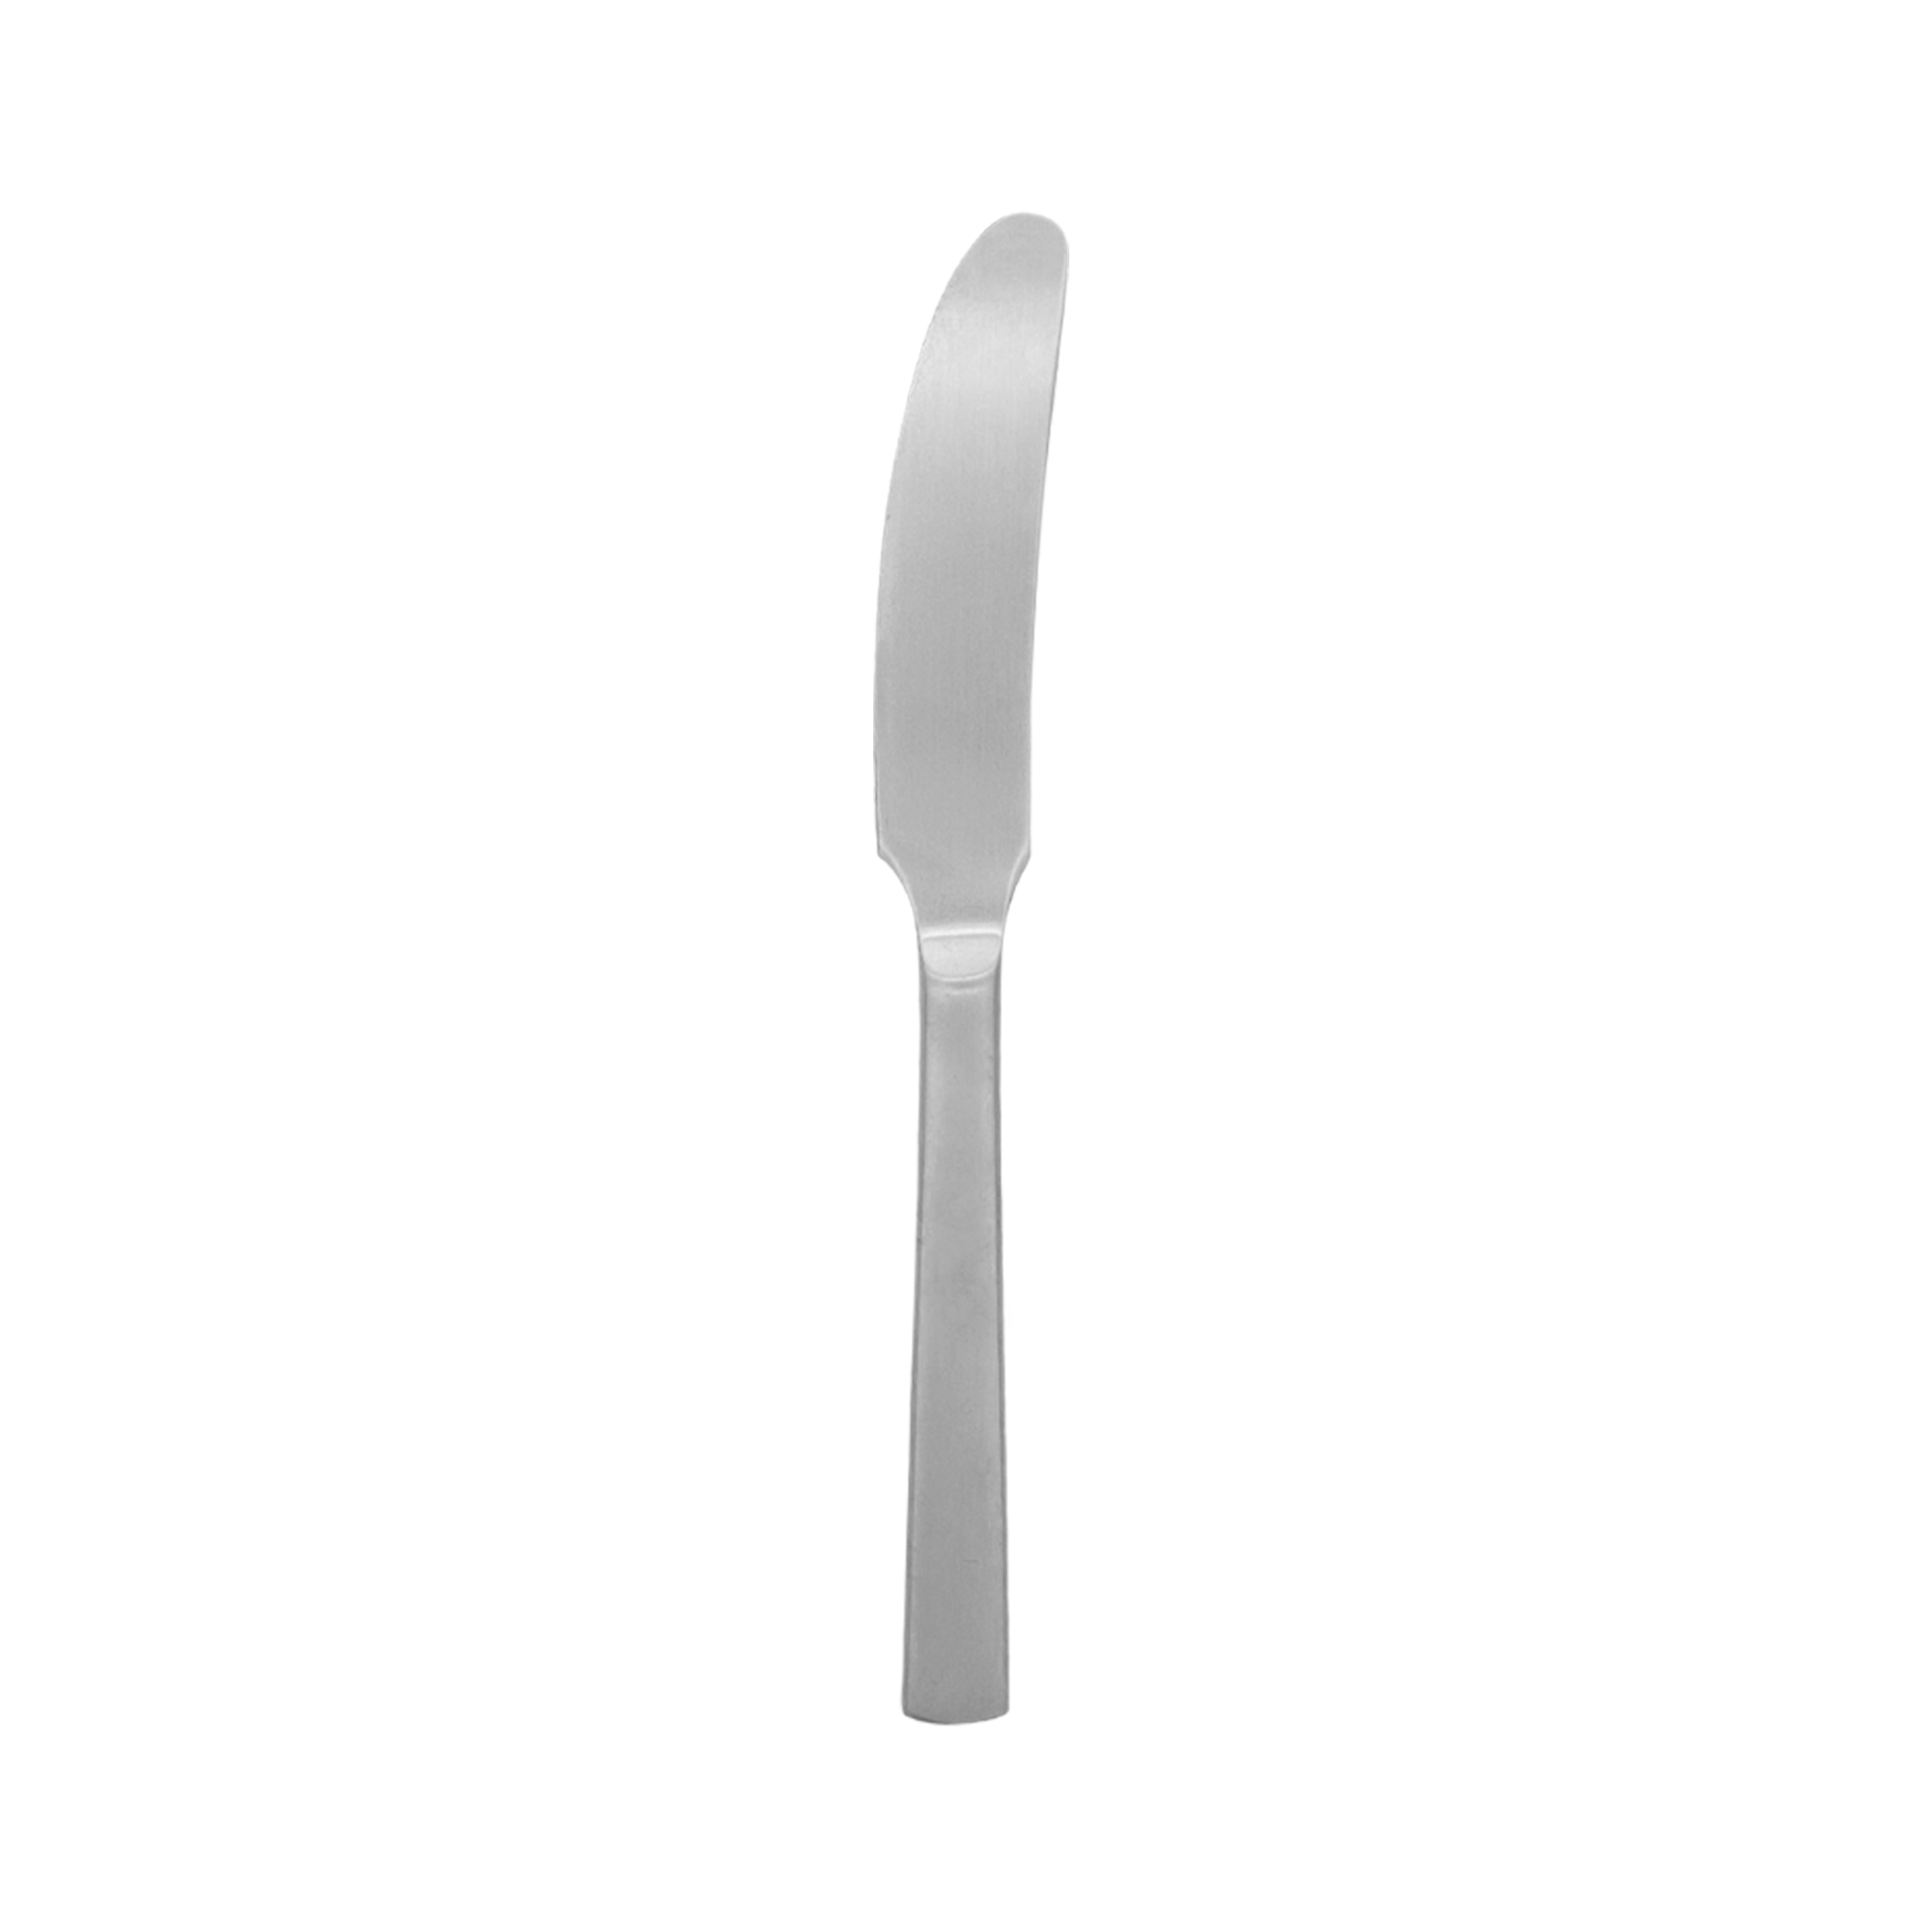 Dinner knife in matt steel, Cutlery